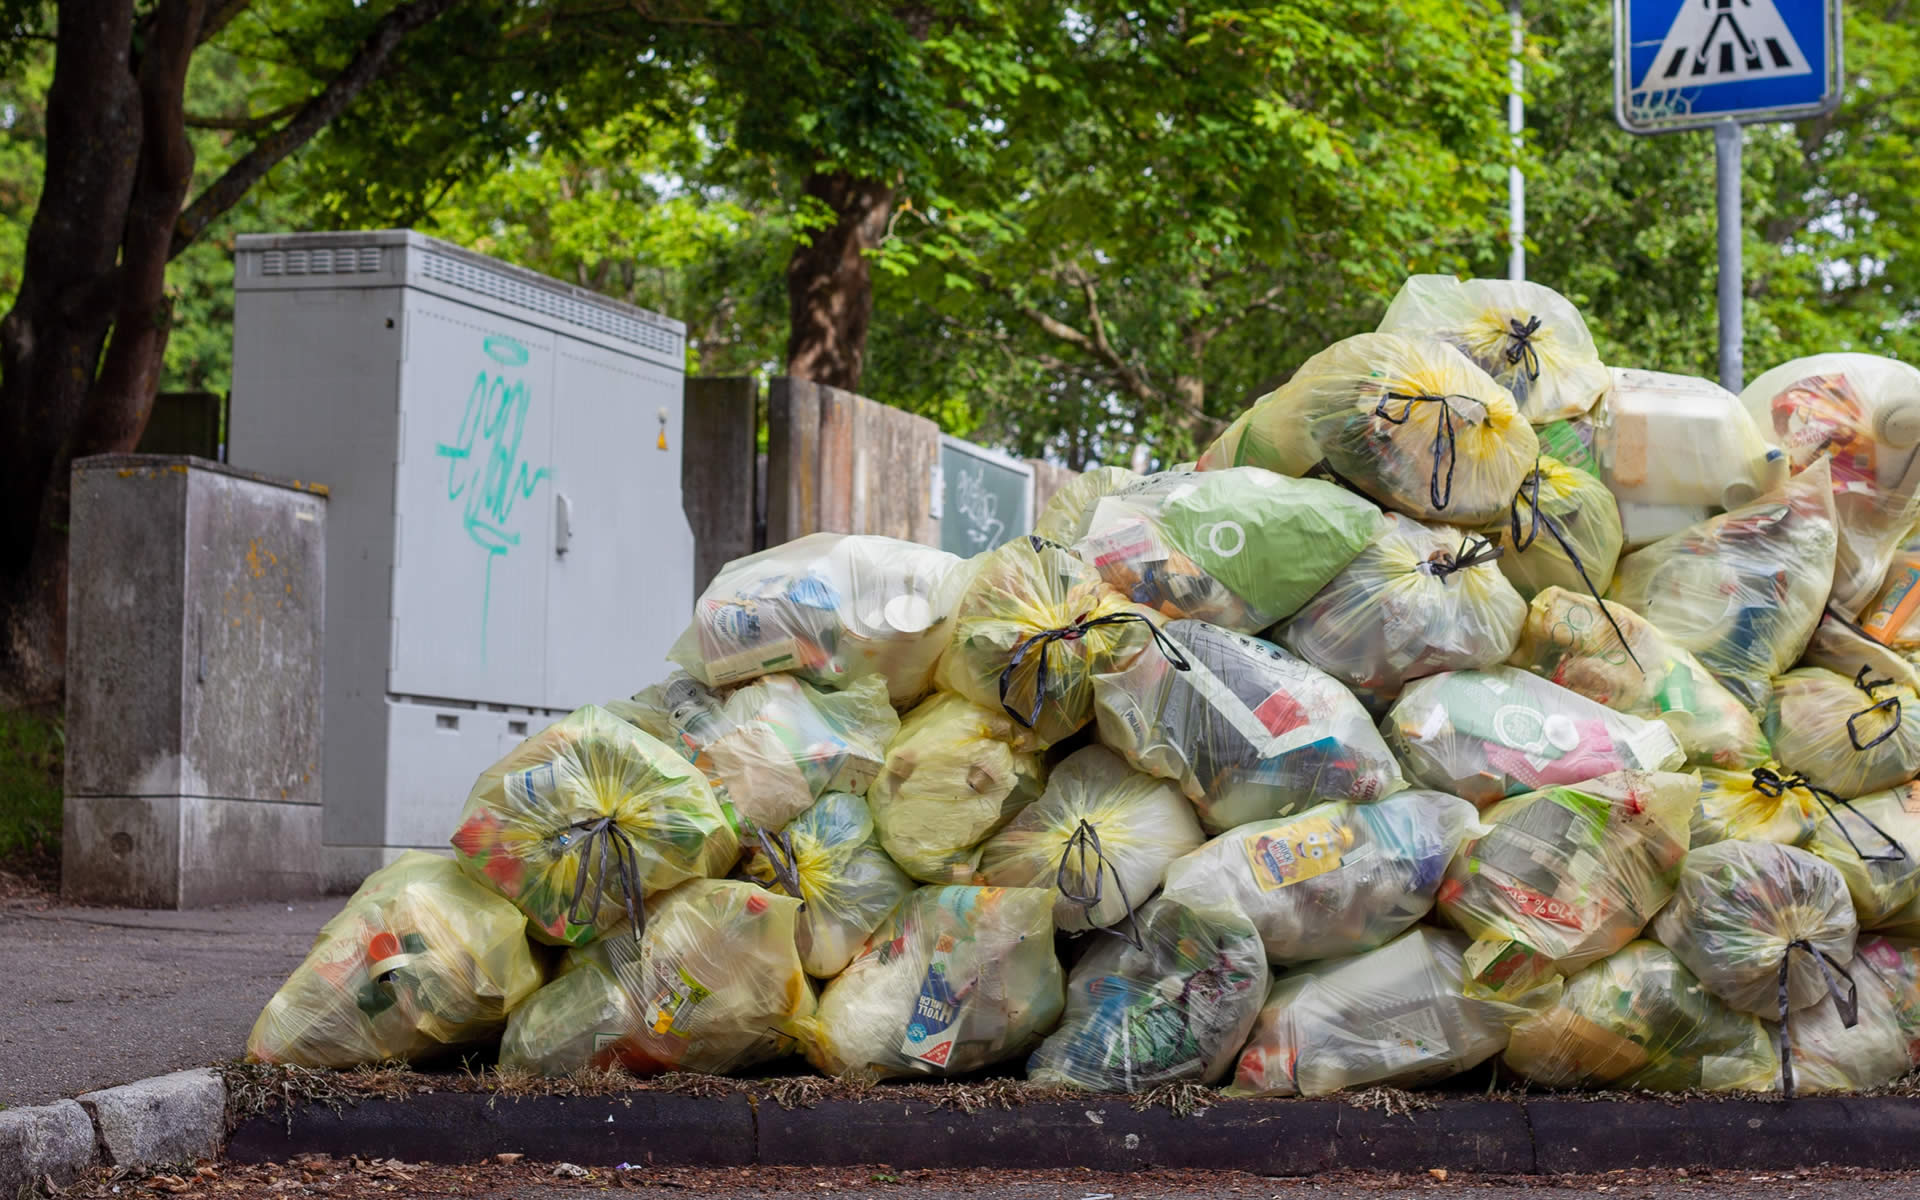 Gestione non autorizzata: sequestrato impianto di rifiuti nel Monzese